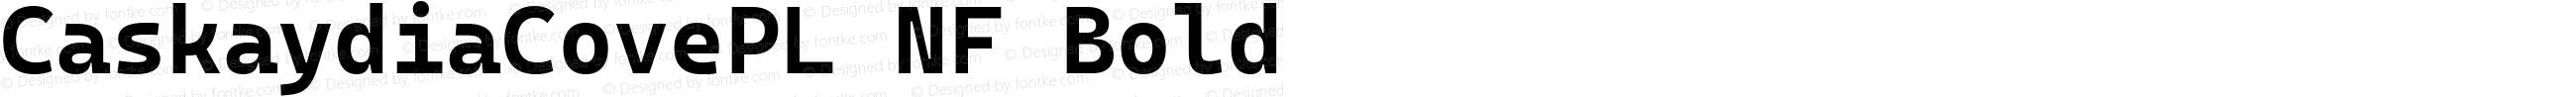 Caskaydia Cove PL Bold Nerd Font Complete Windows Compatible